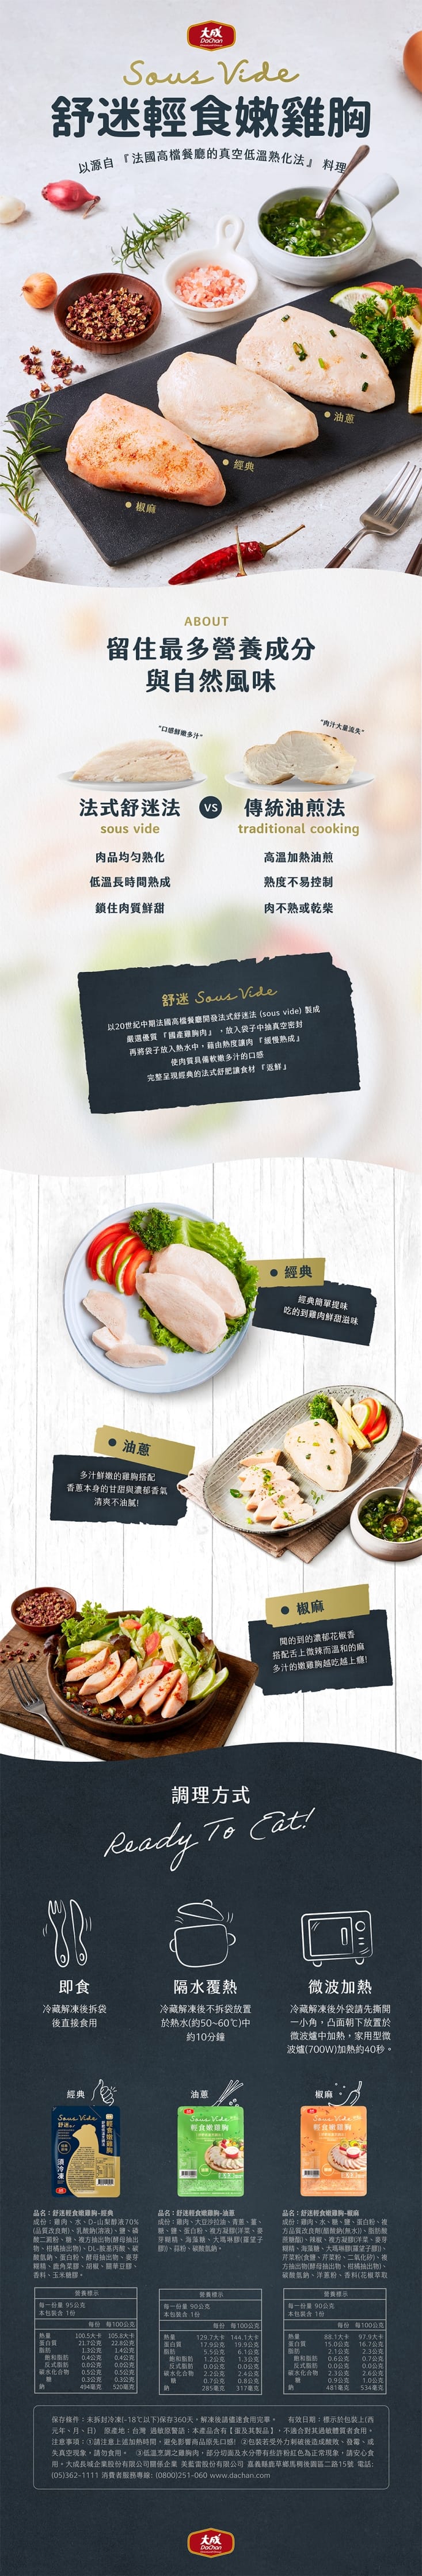 【大成食品】舒迷輕食嫩雞胸任選 原味/油蔥/椒麻 舒肥雞胸肉